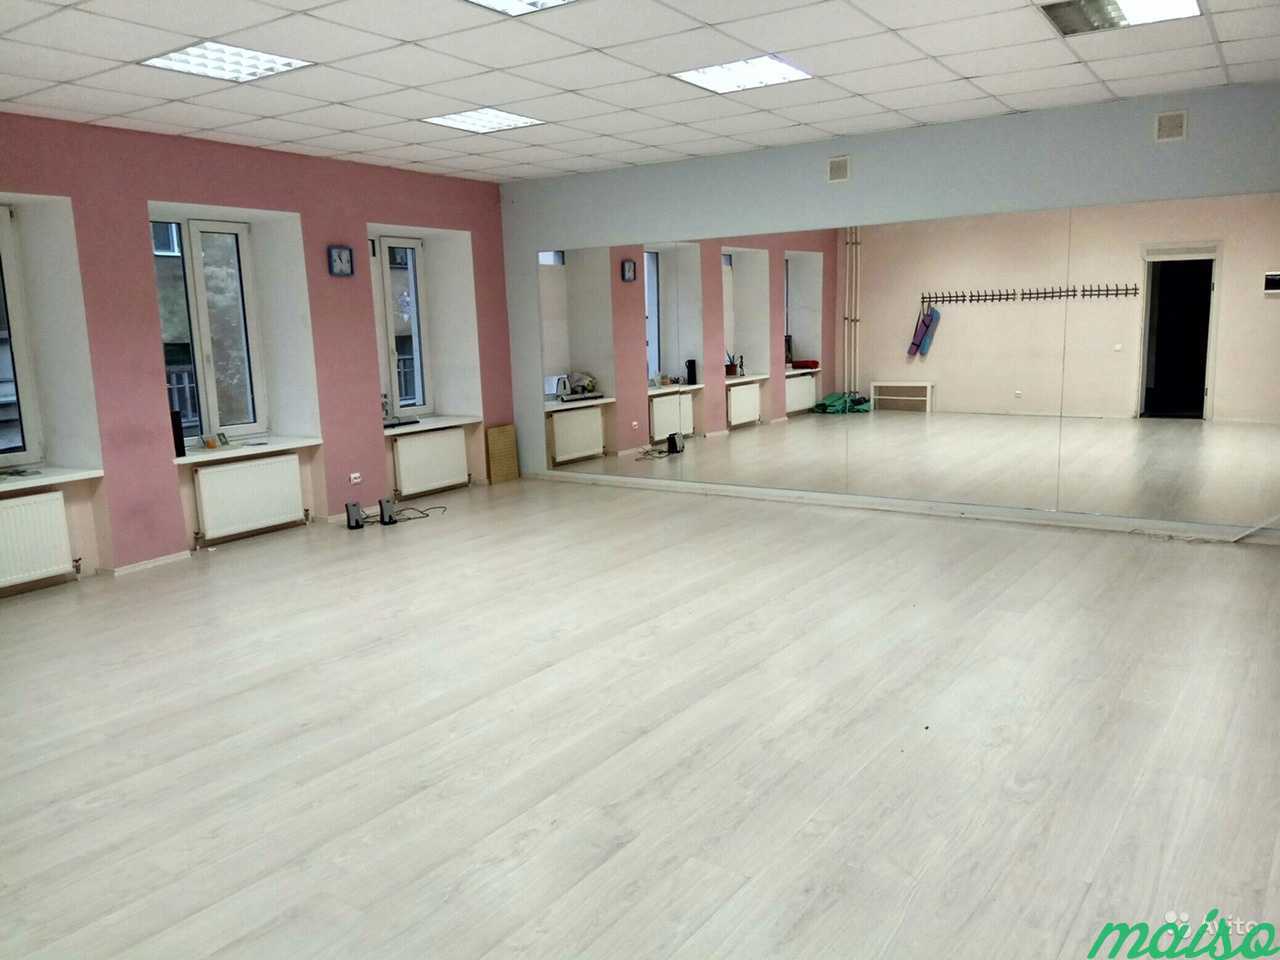 Аренда танцевального зала в Санкт-Петербурге. Фото 3